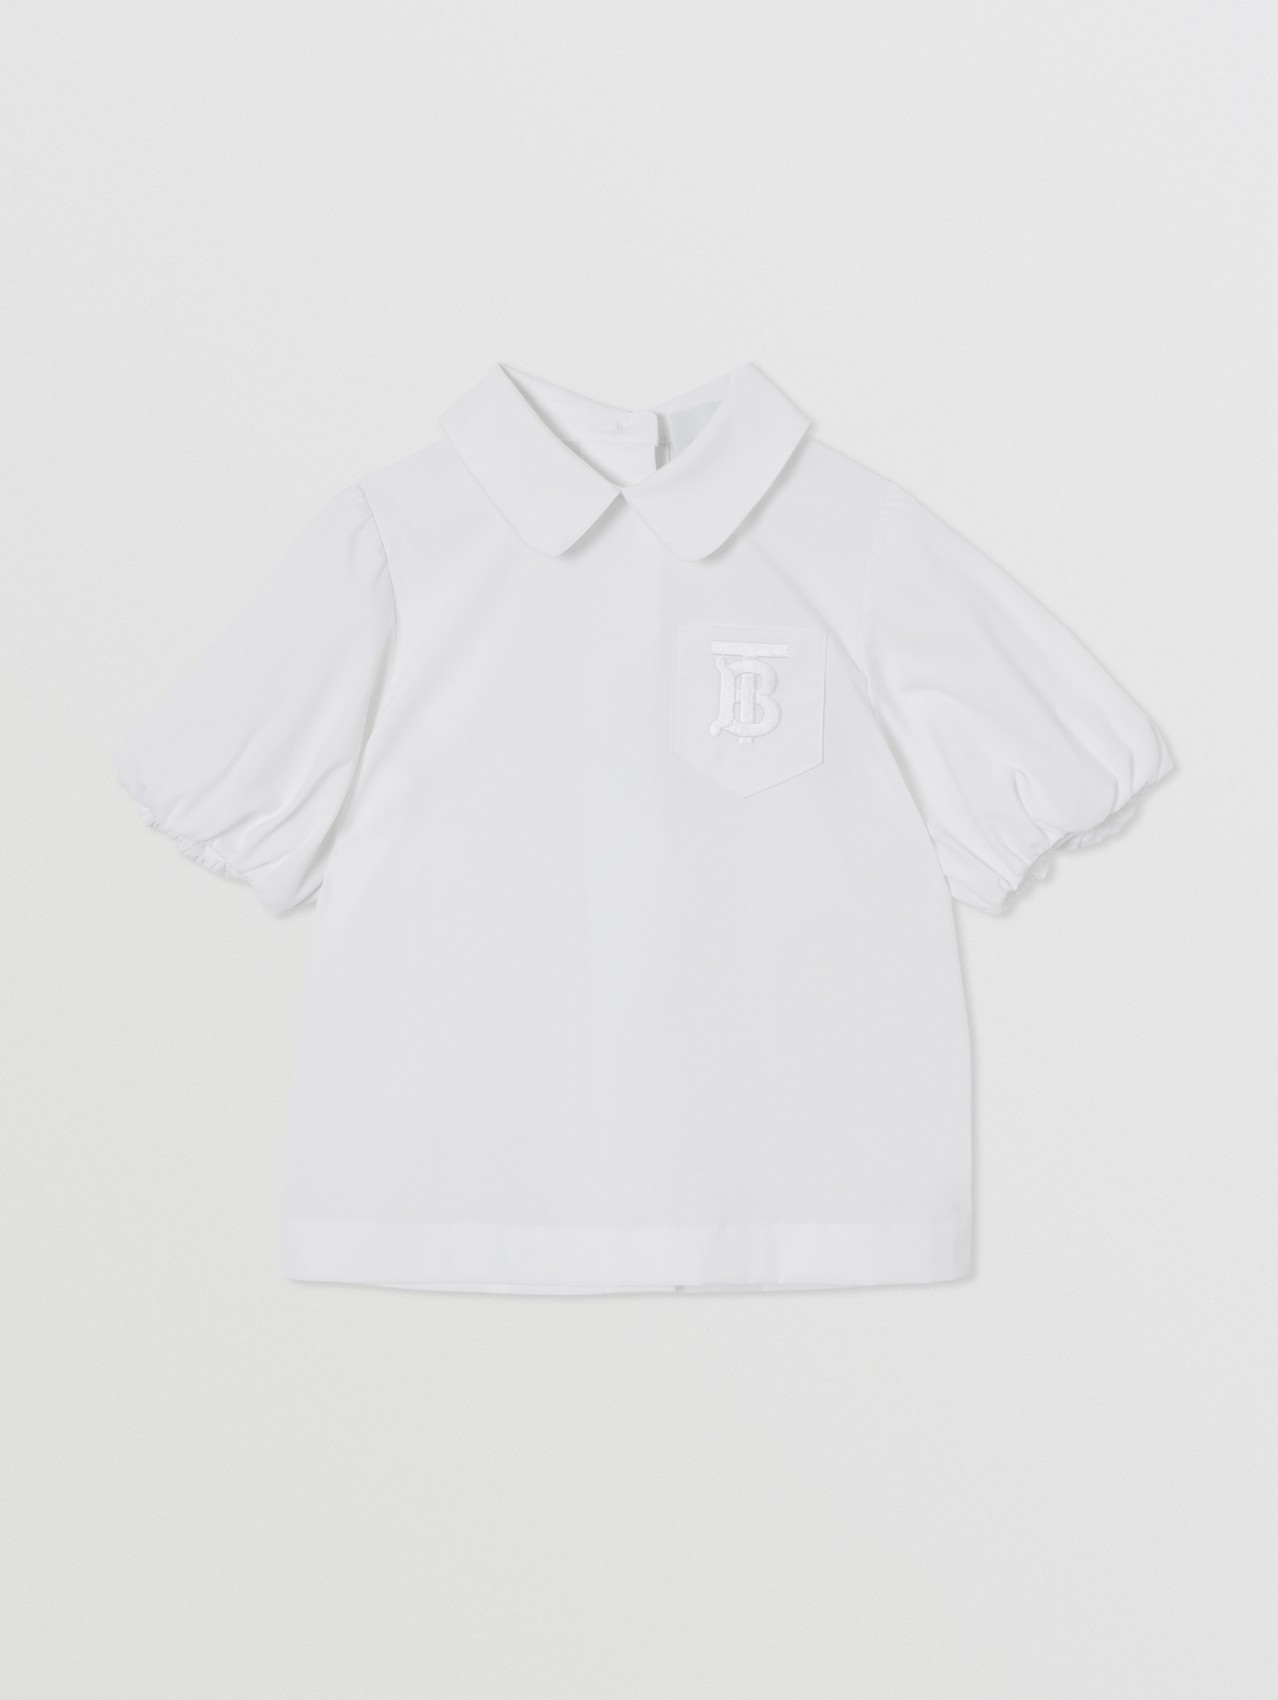 Bluse aus Stretchbaumwolle mit Monogrammmotiv (Weiß)